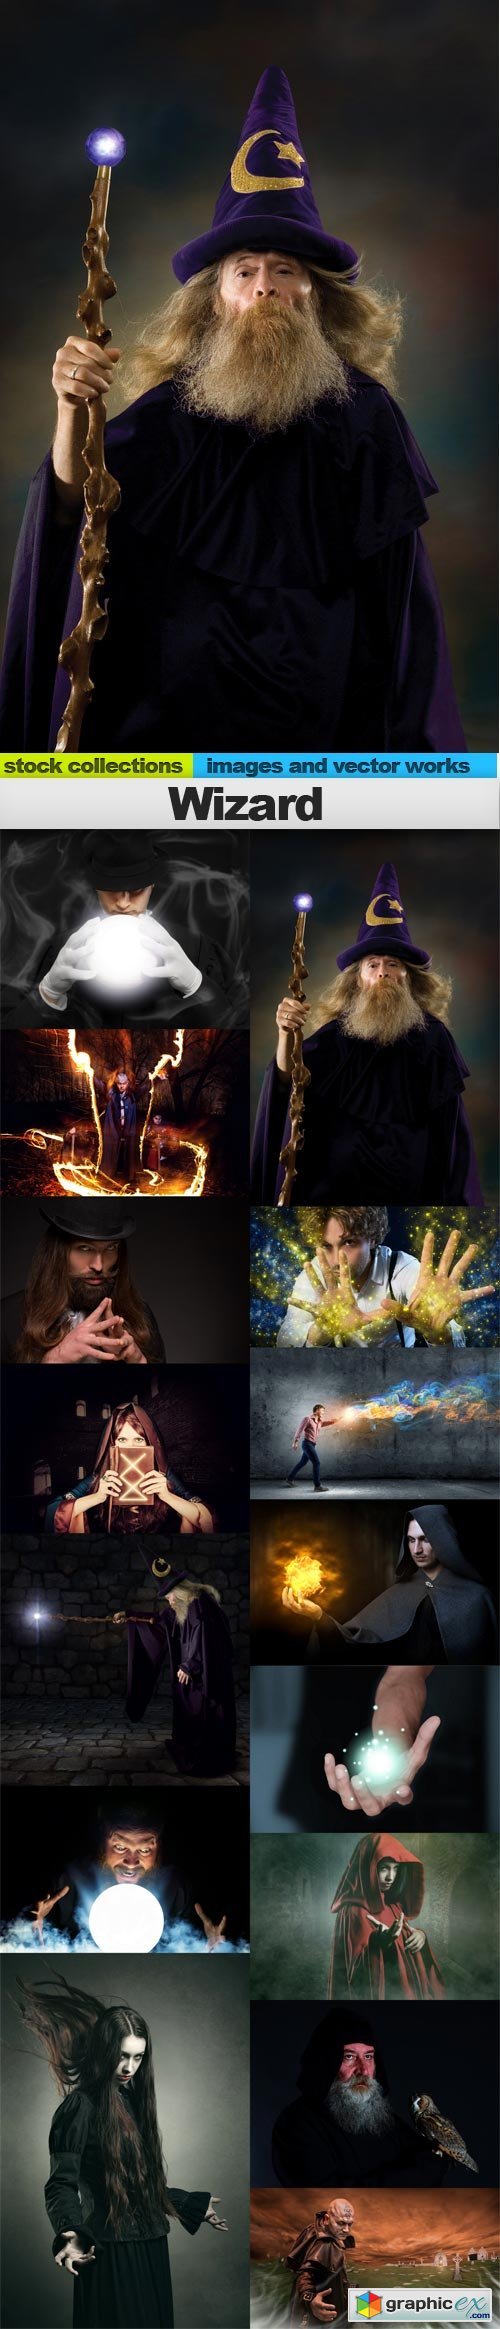 Wizard, 15 x UHQ JPEG